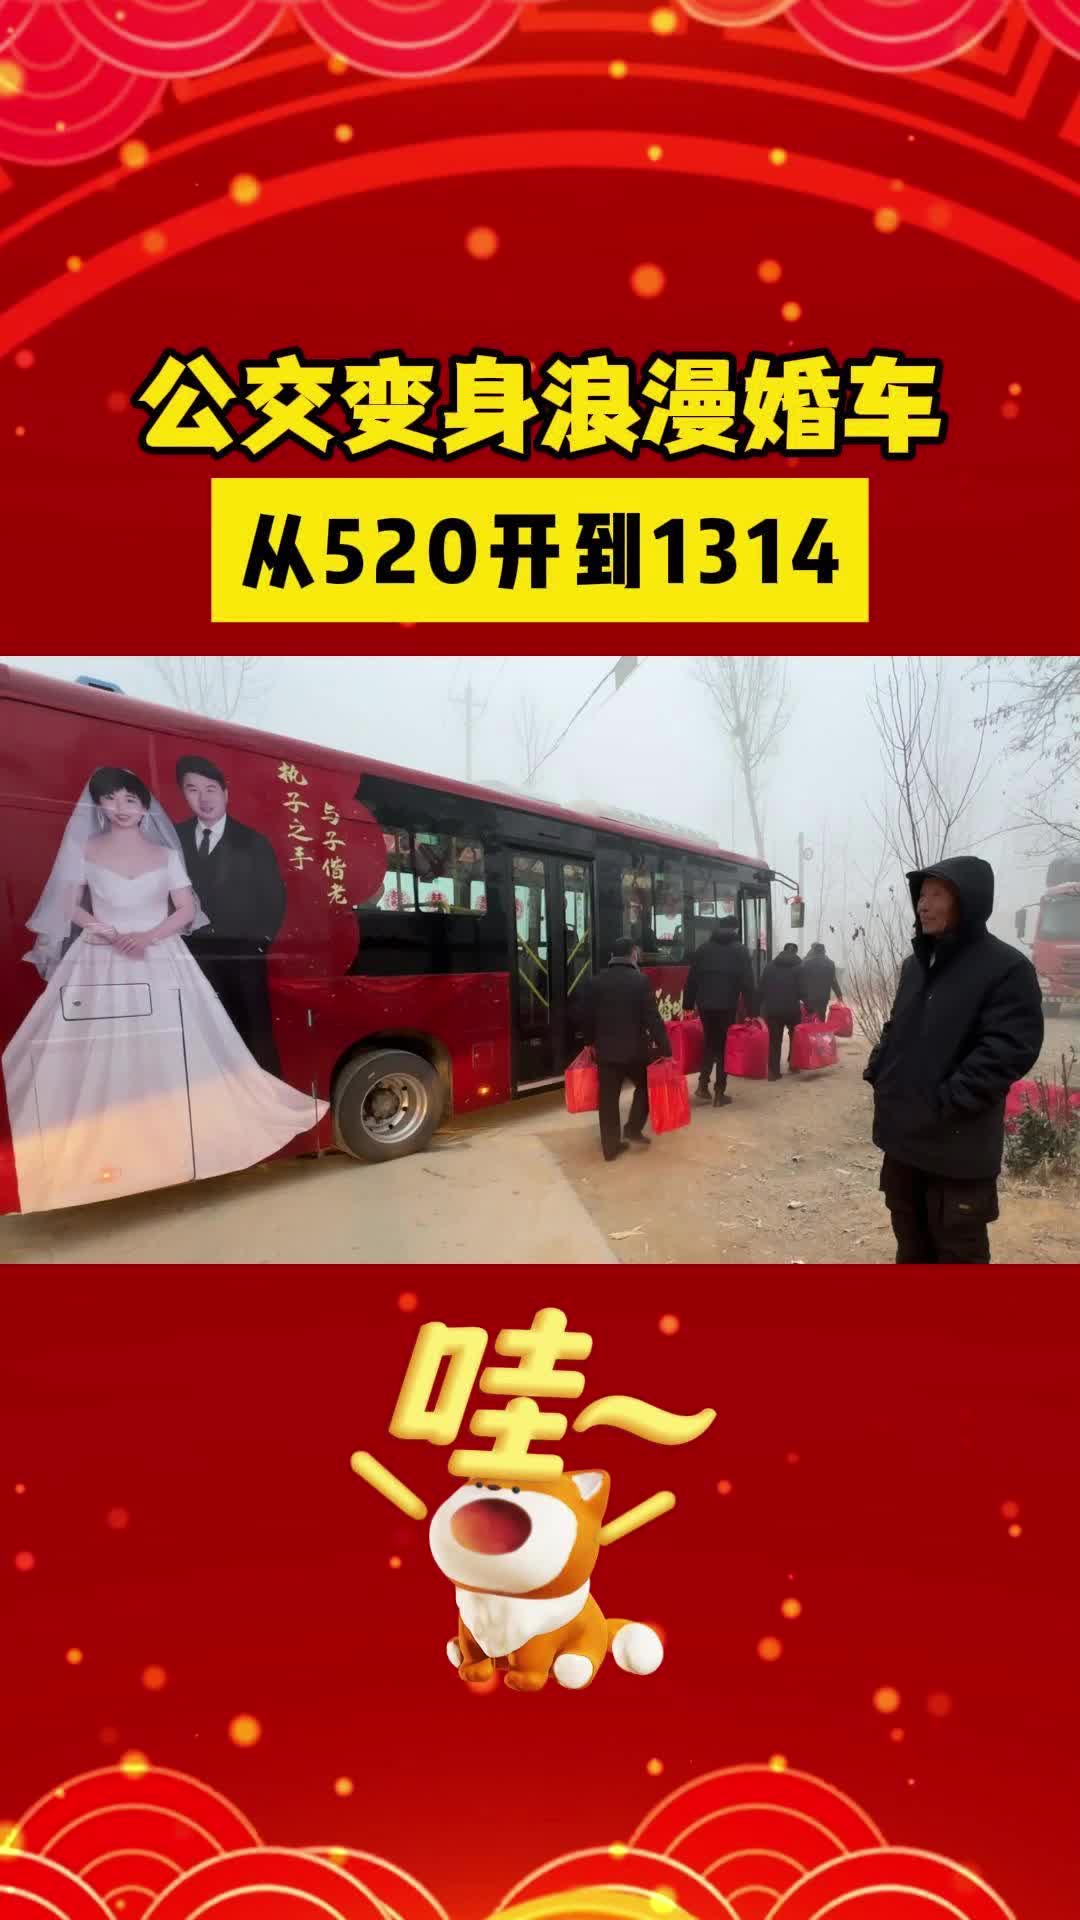 【邹视频·新闻】31秒|公交变身浪漫婚车 从520开到1314